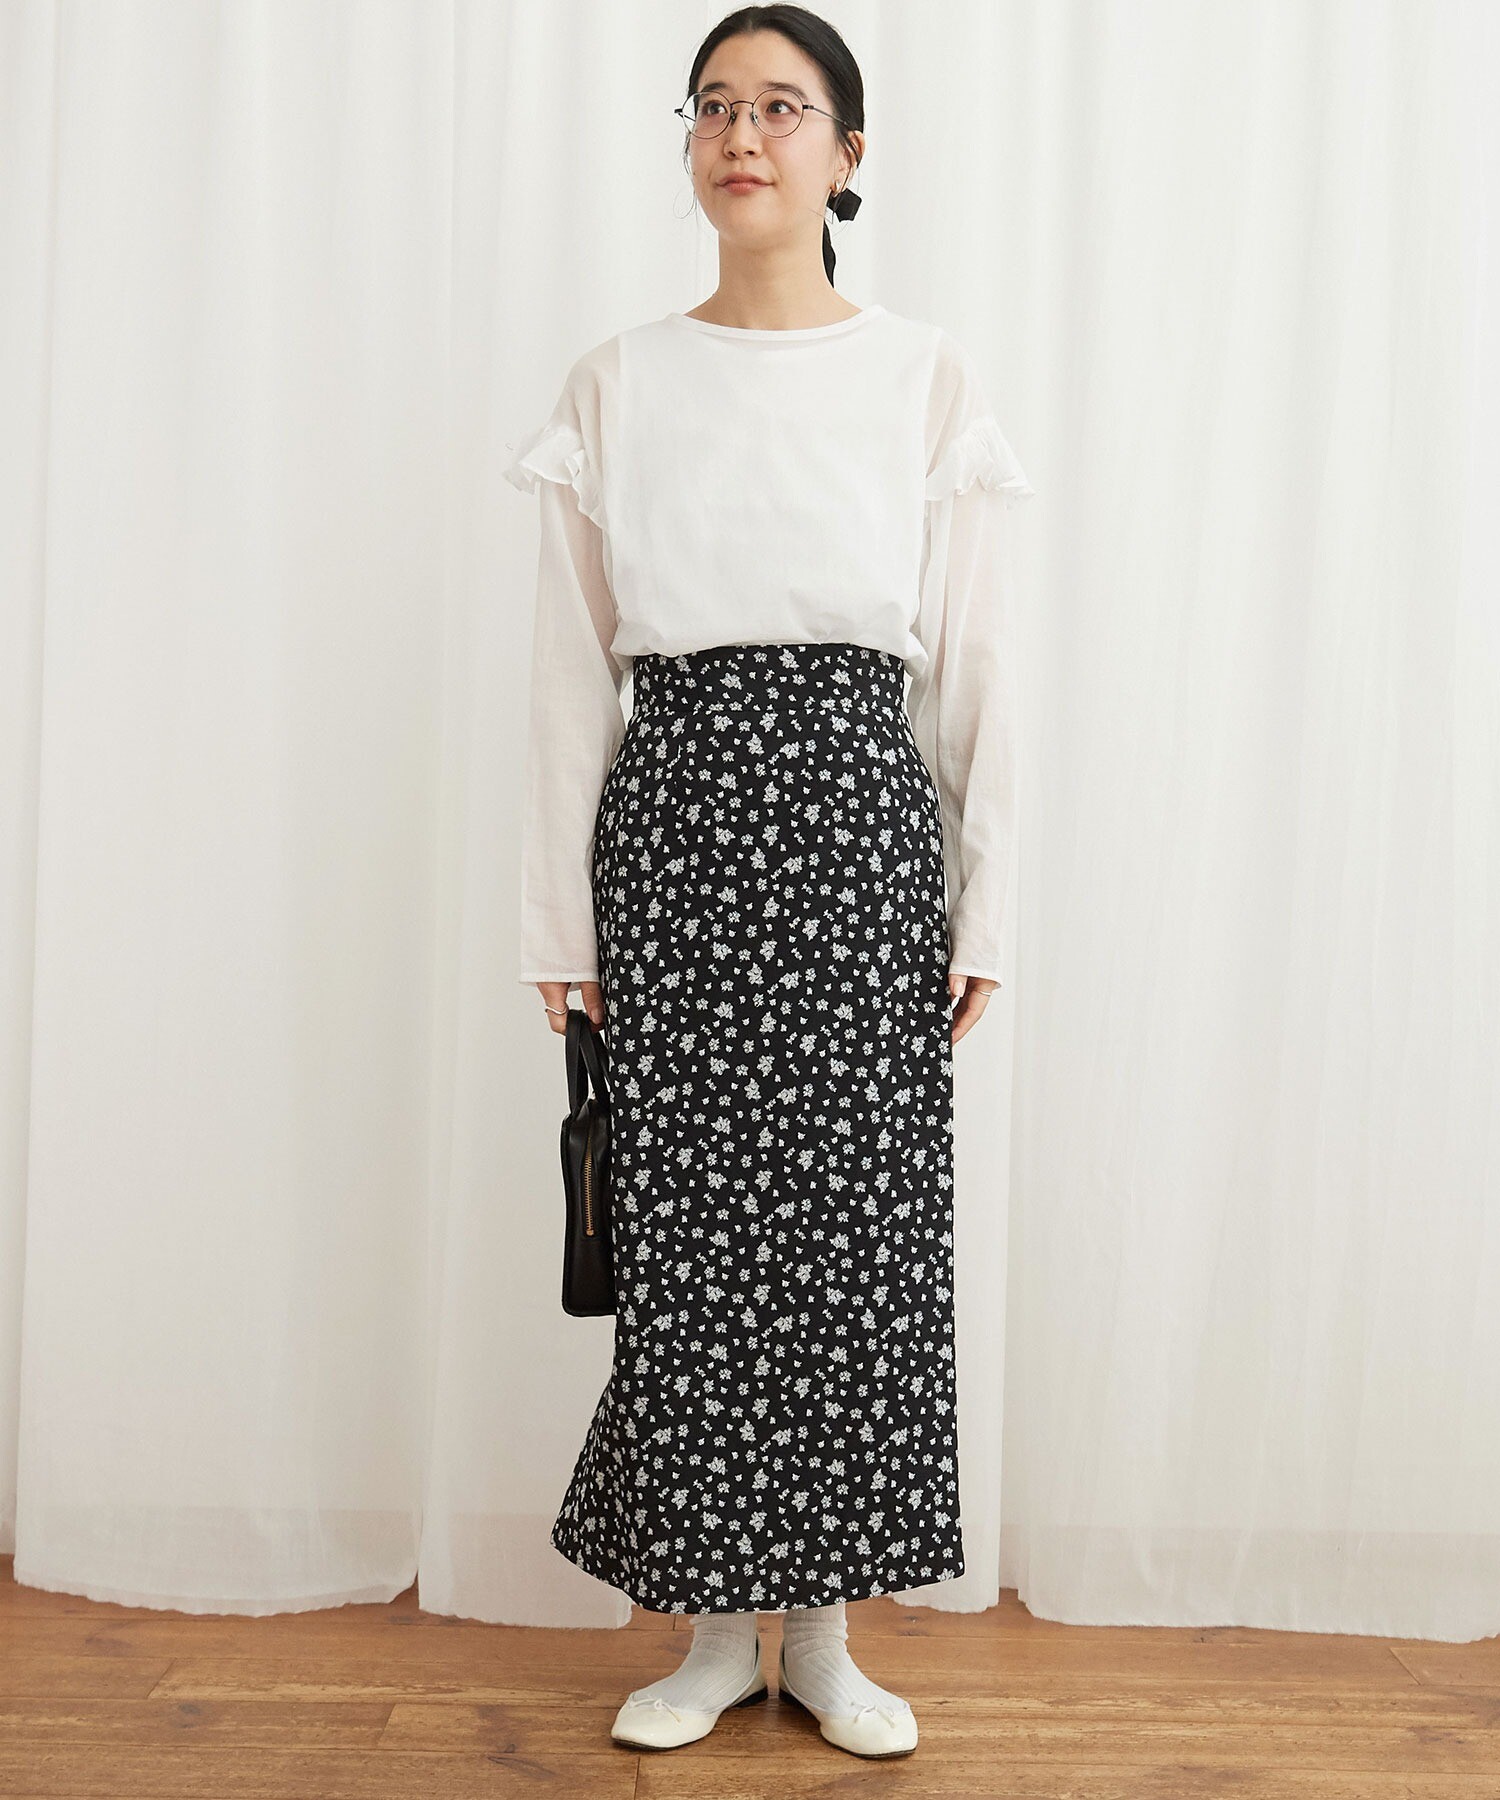 AMBIDEX Store ROSE skirt(F アオ): l'atelier du savon